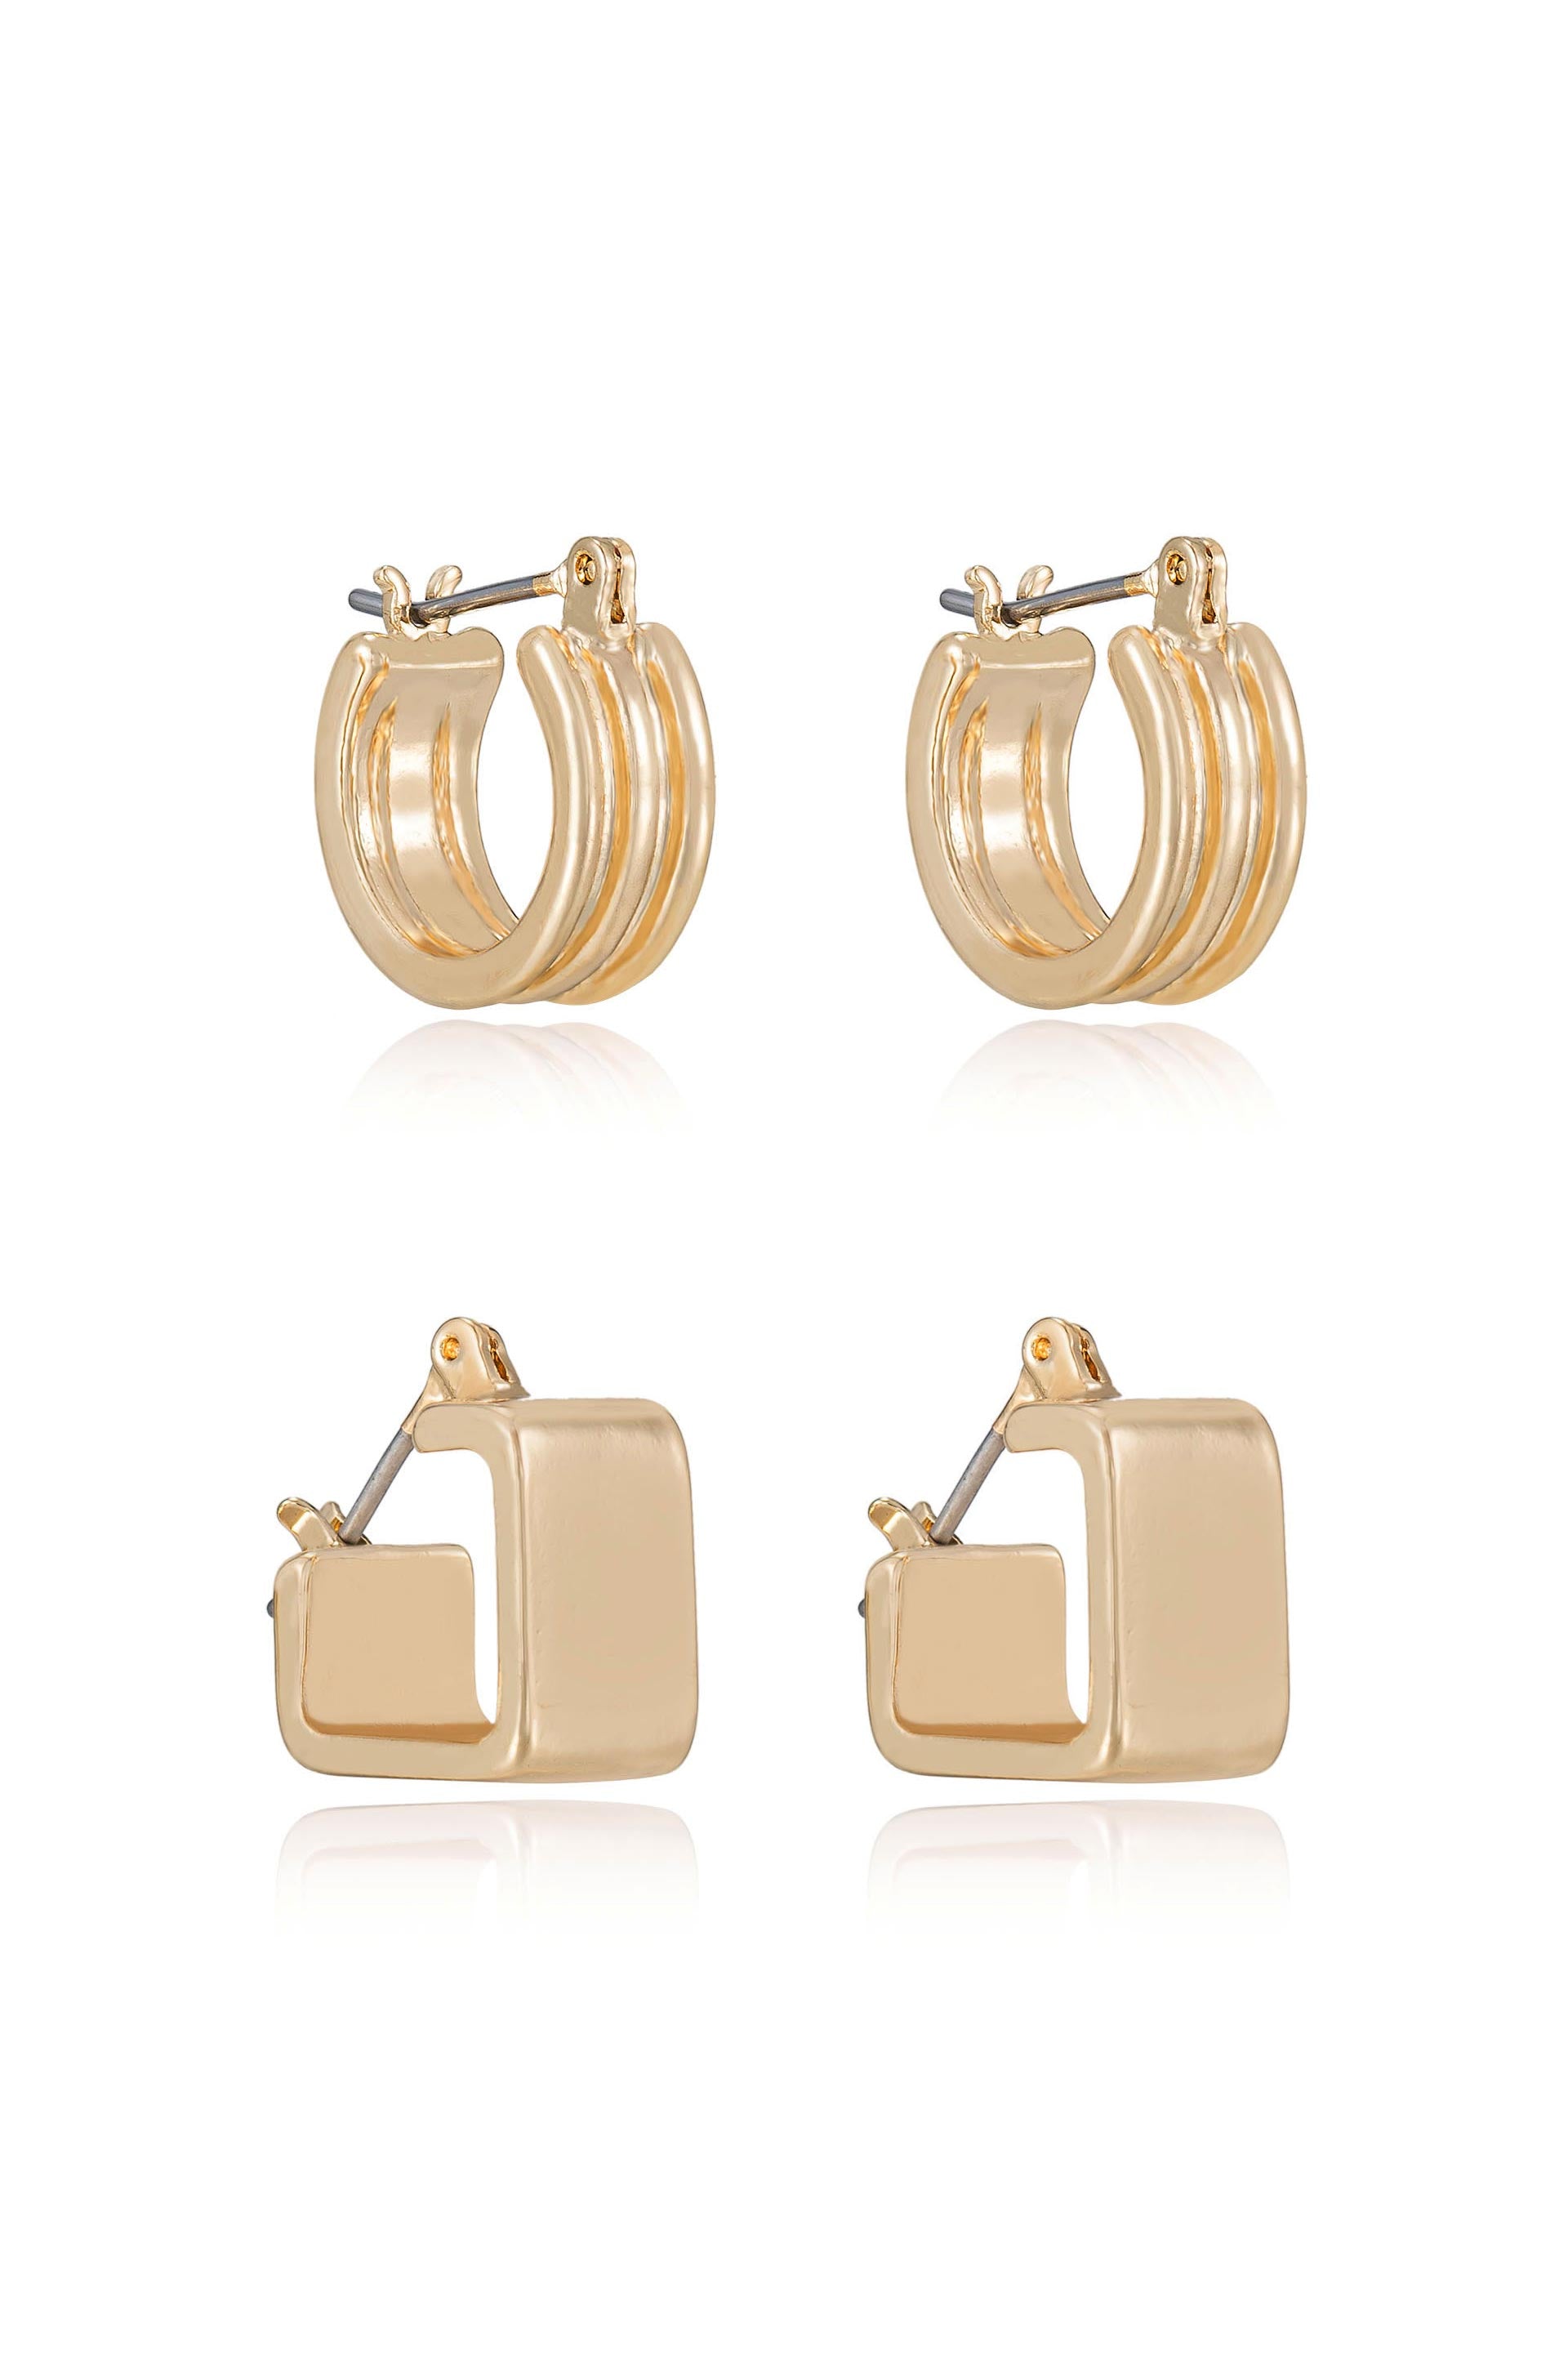 Small huggie hoop earrings. Gold huggie hoop earring set. Minimalist s